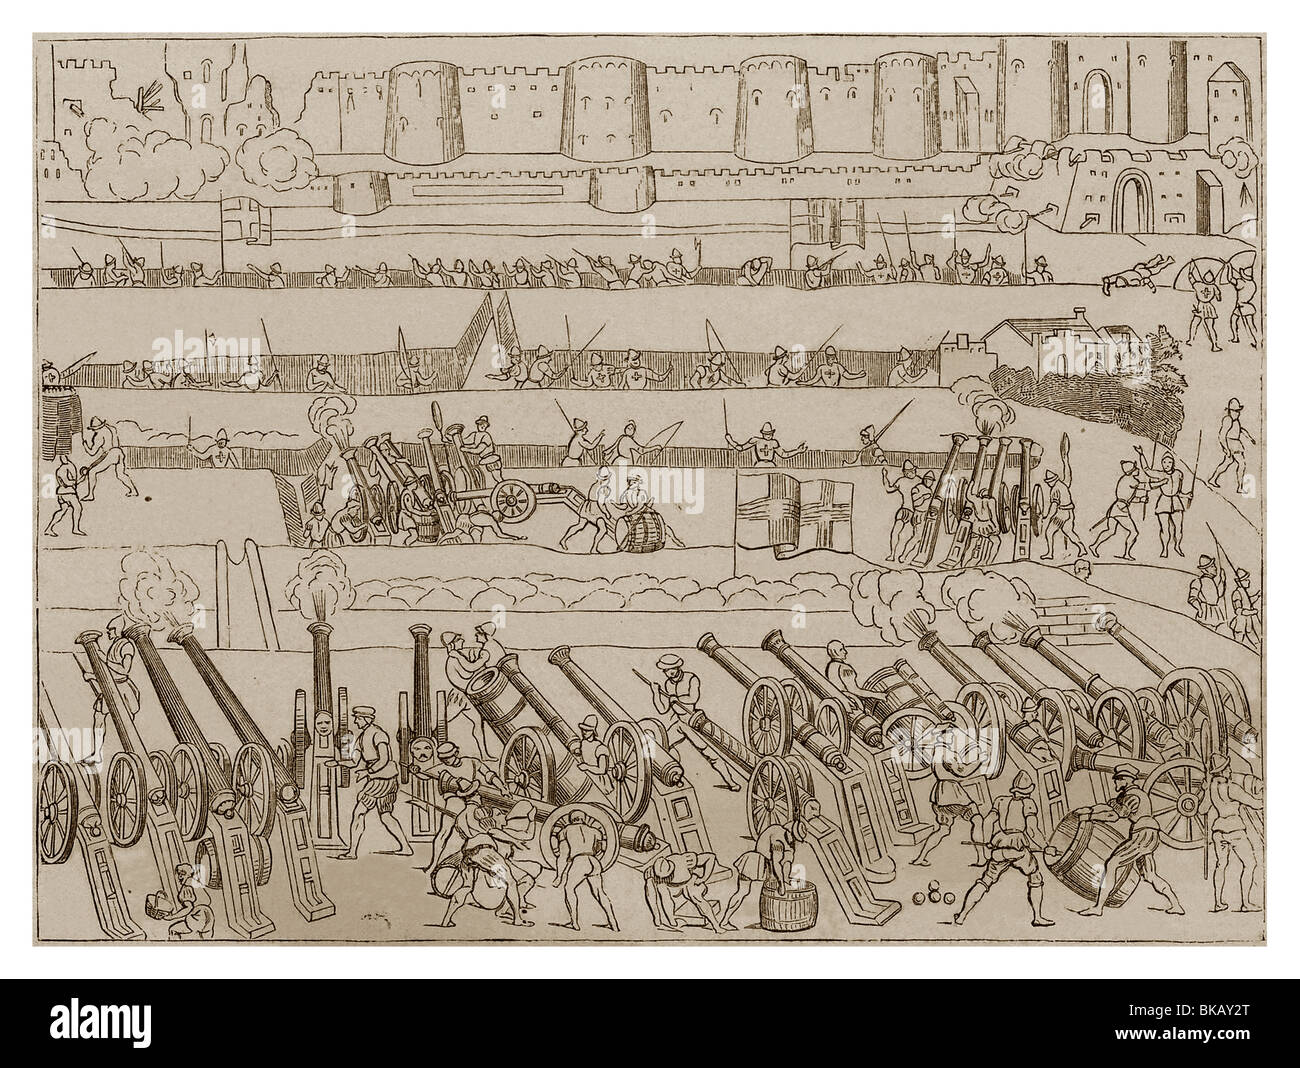 La guerra de asedio en el siglo XVI en Francia. (Estudios de artillería, por Louis-Napoleon Bonaparte) Foto de stock